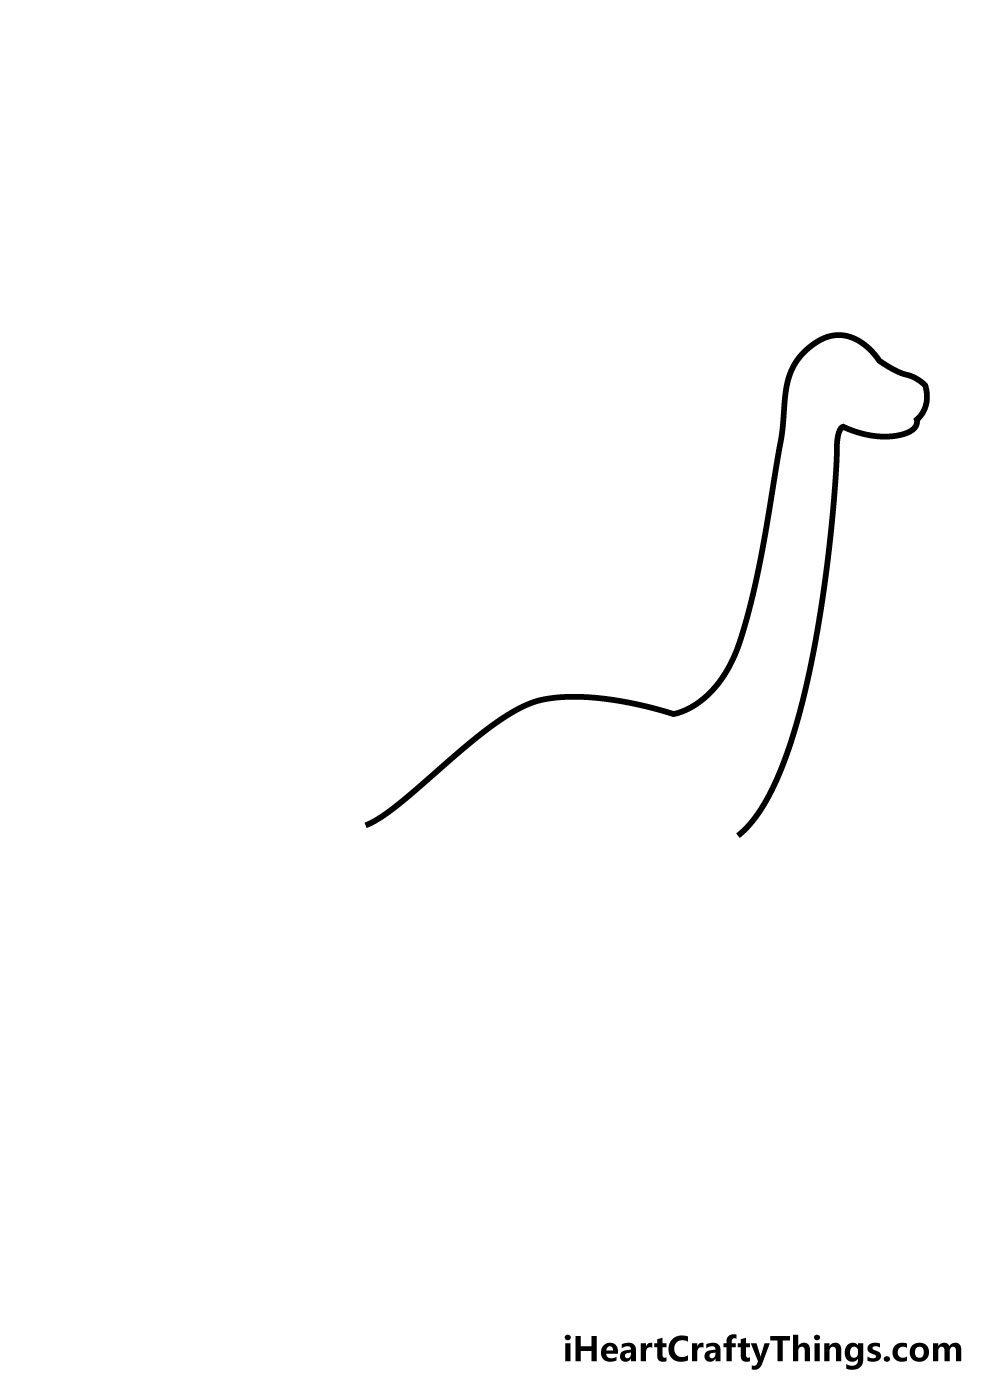 How to draw a dinosaur 3 - Hướng dẫn cách vẽ con khủng long đơn giản với 8 bước cơ bản